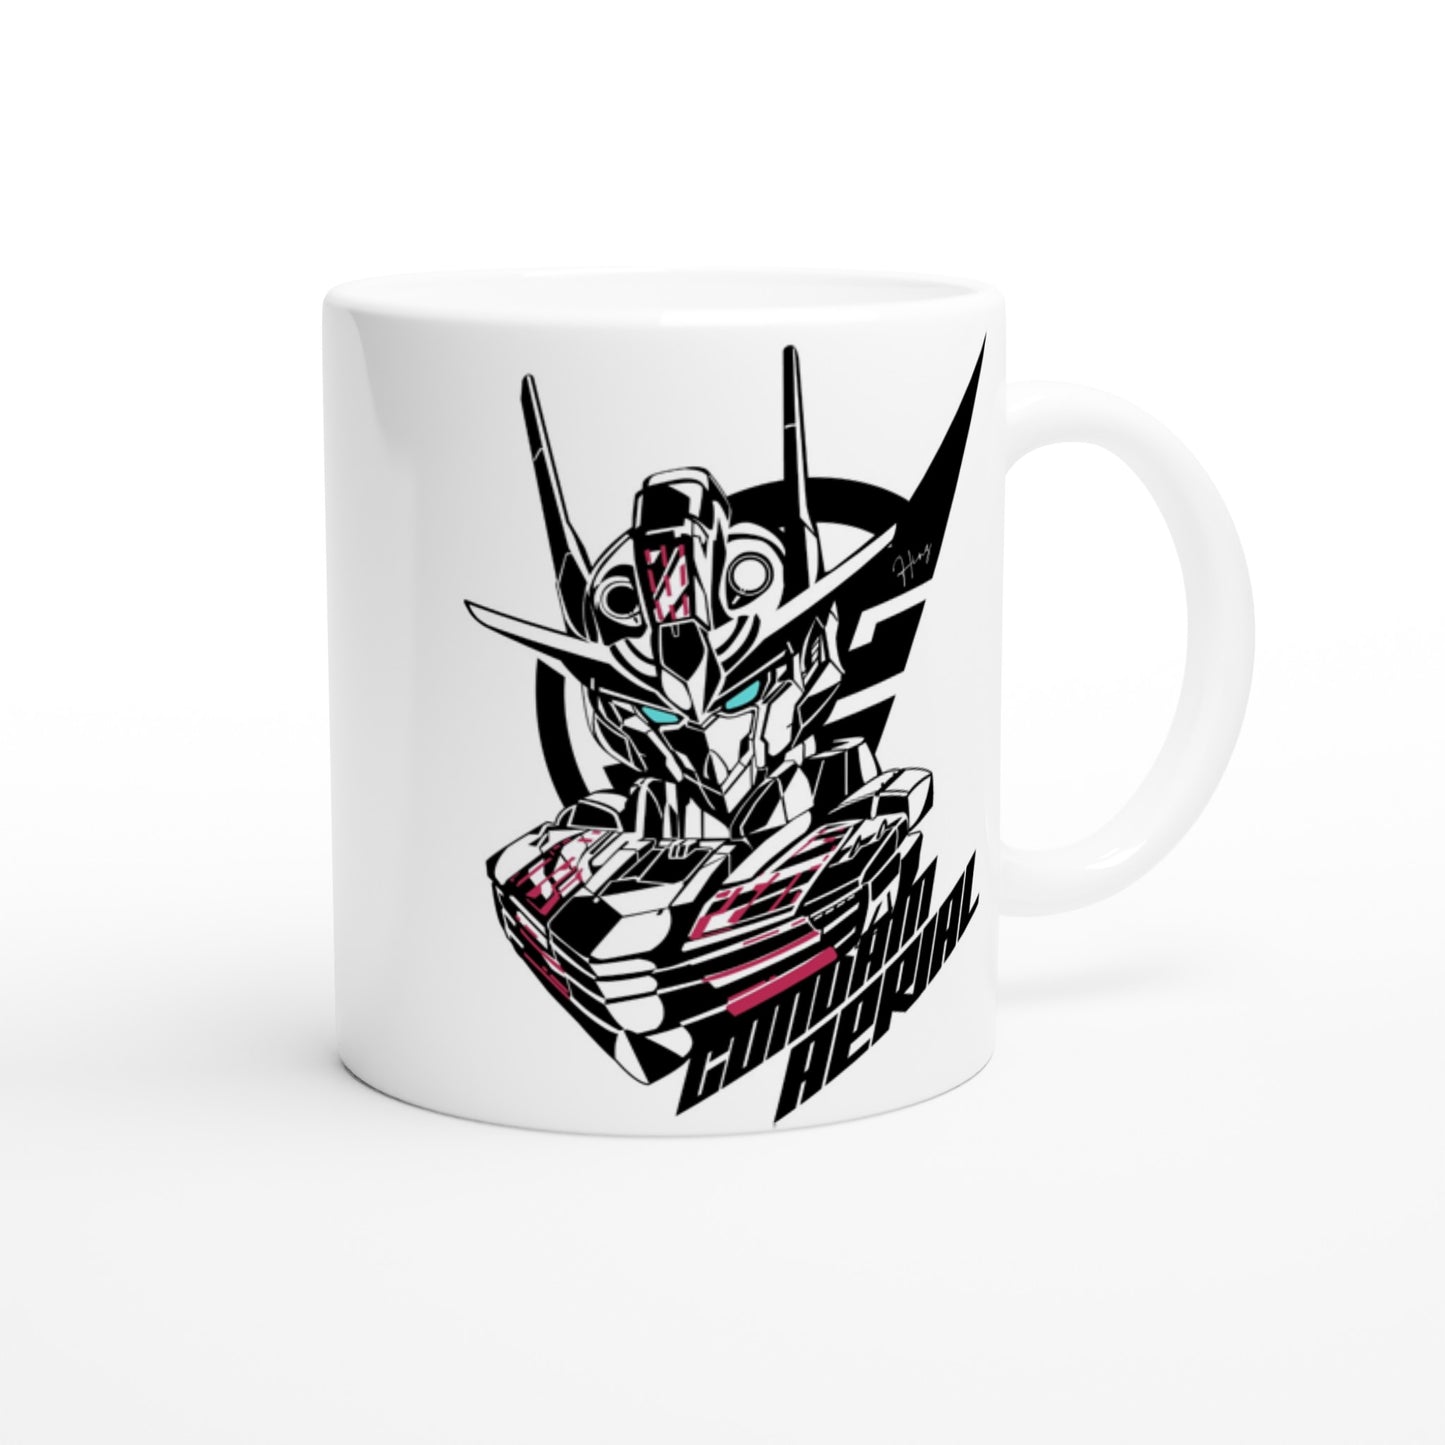 Gundam Mug - Gundam Aerial Artwork - White Ceramic 330ml Mug 